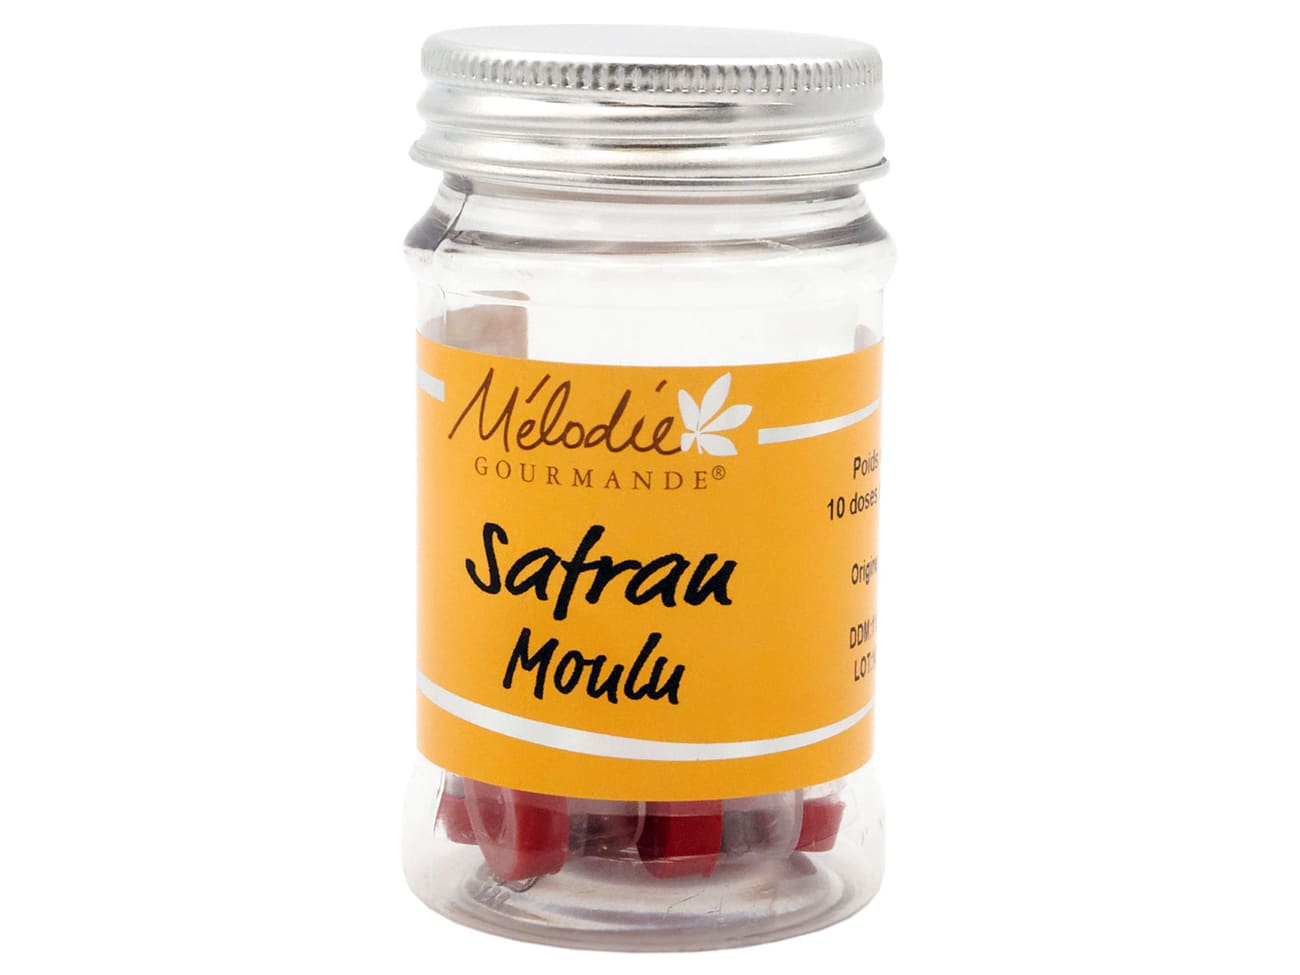 Safran - Epicerie fine - Safran pure en poudre